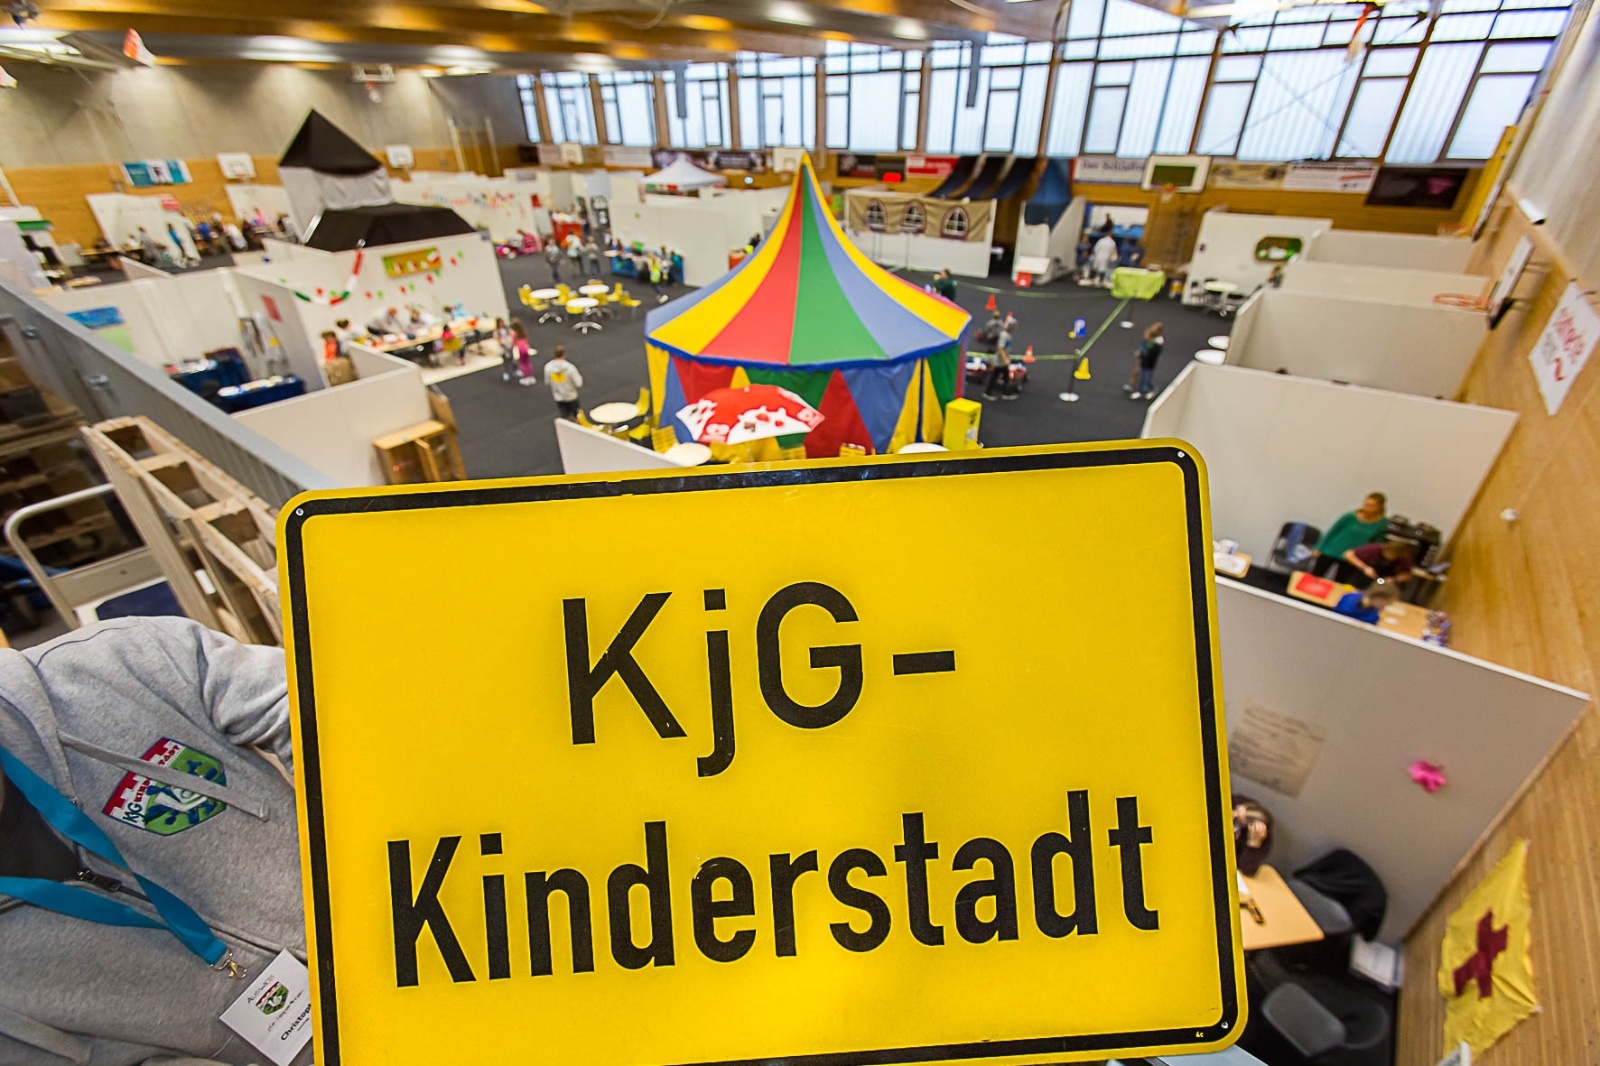 KjG-Kinderstadt (c) Uwe Völkner